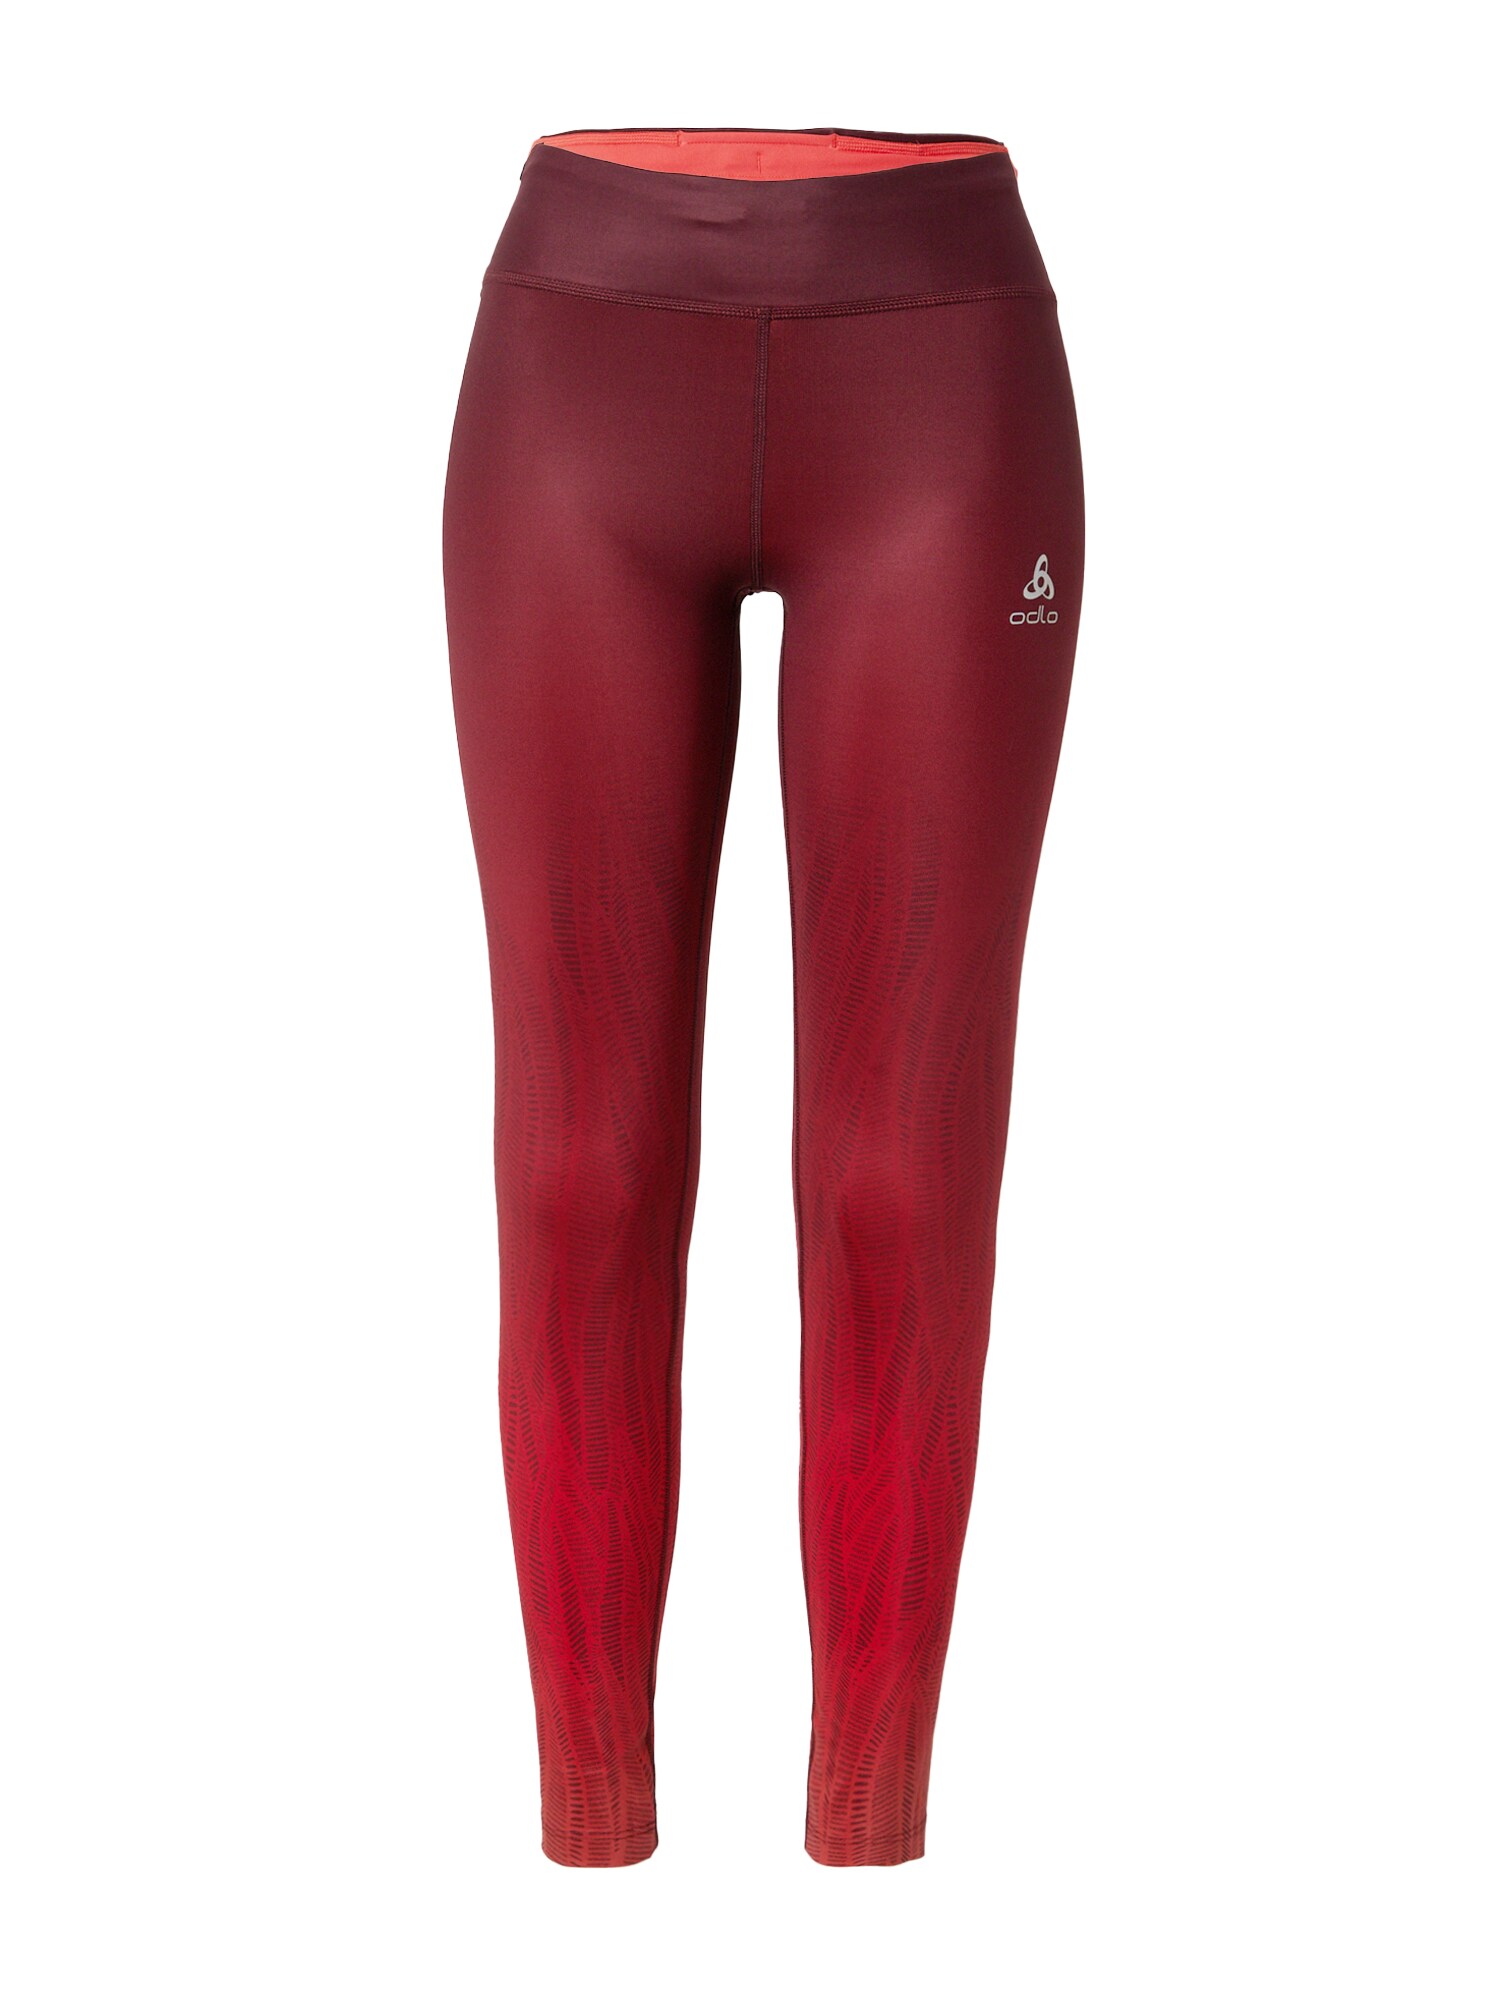 ODLO Sportinės kelnės 'Zeroweight' raudona / vyšninė spalva / balkšva